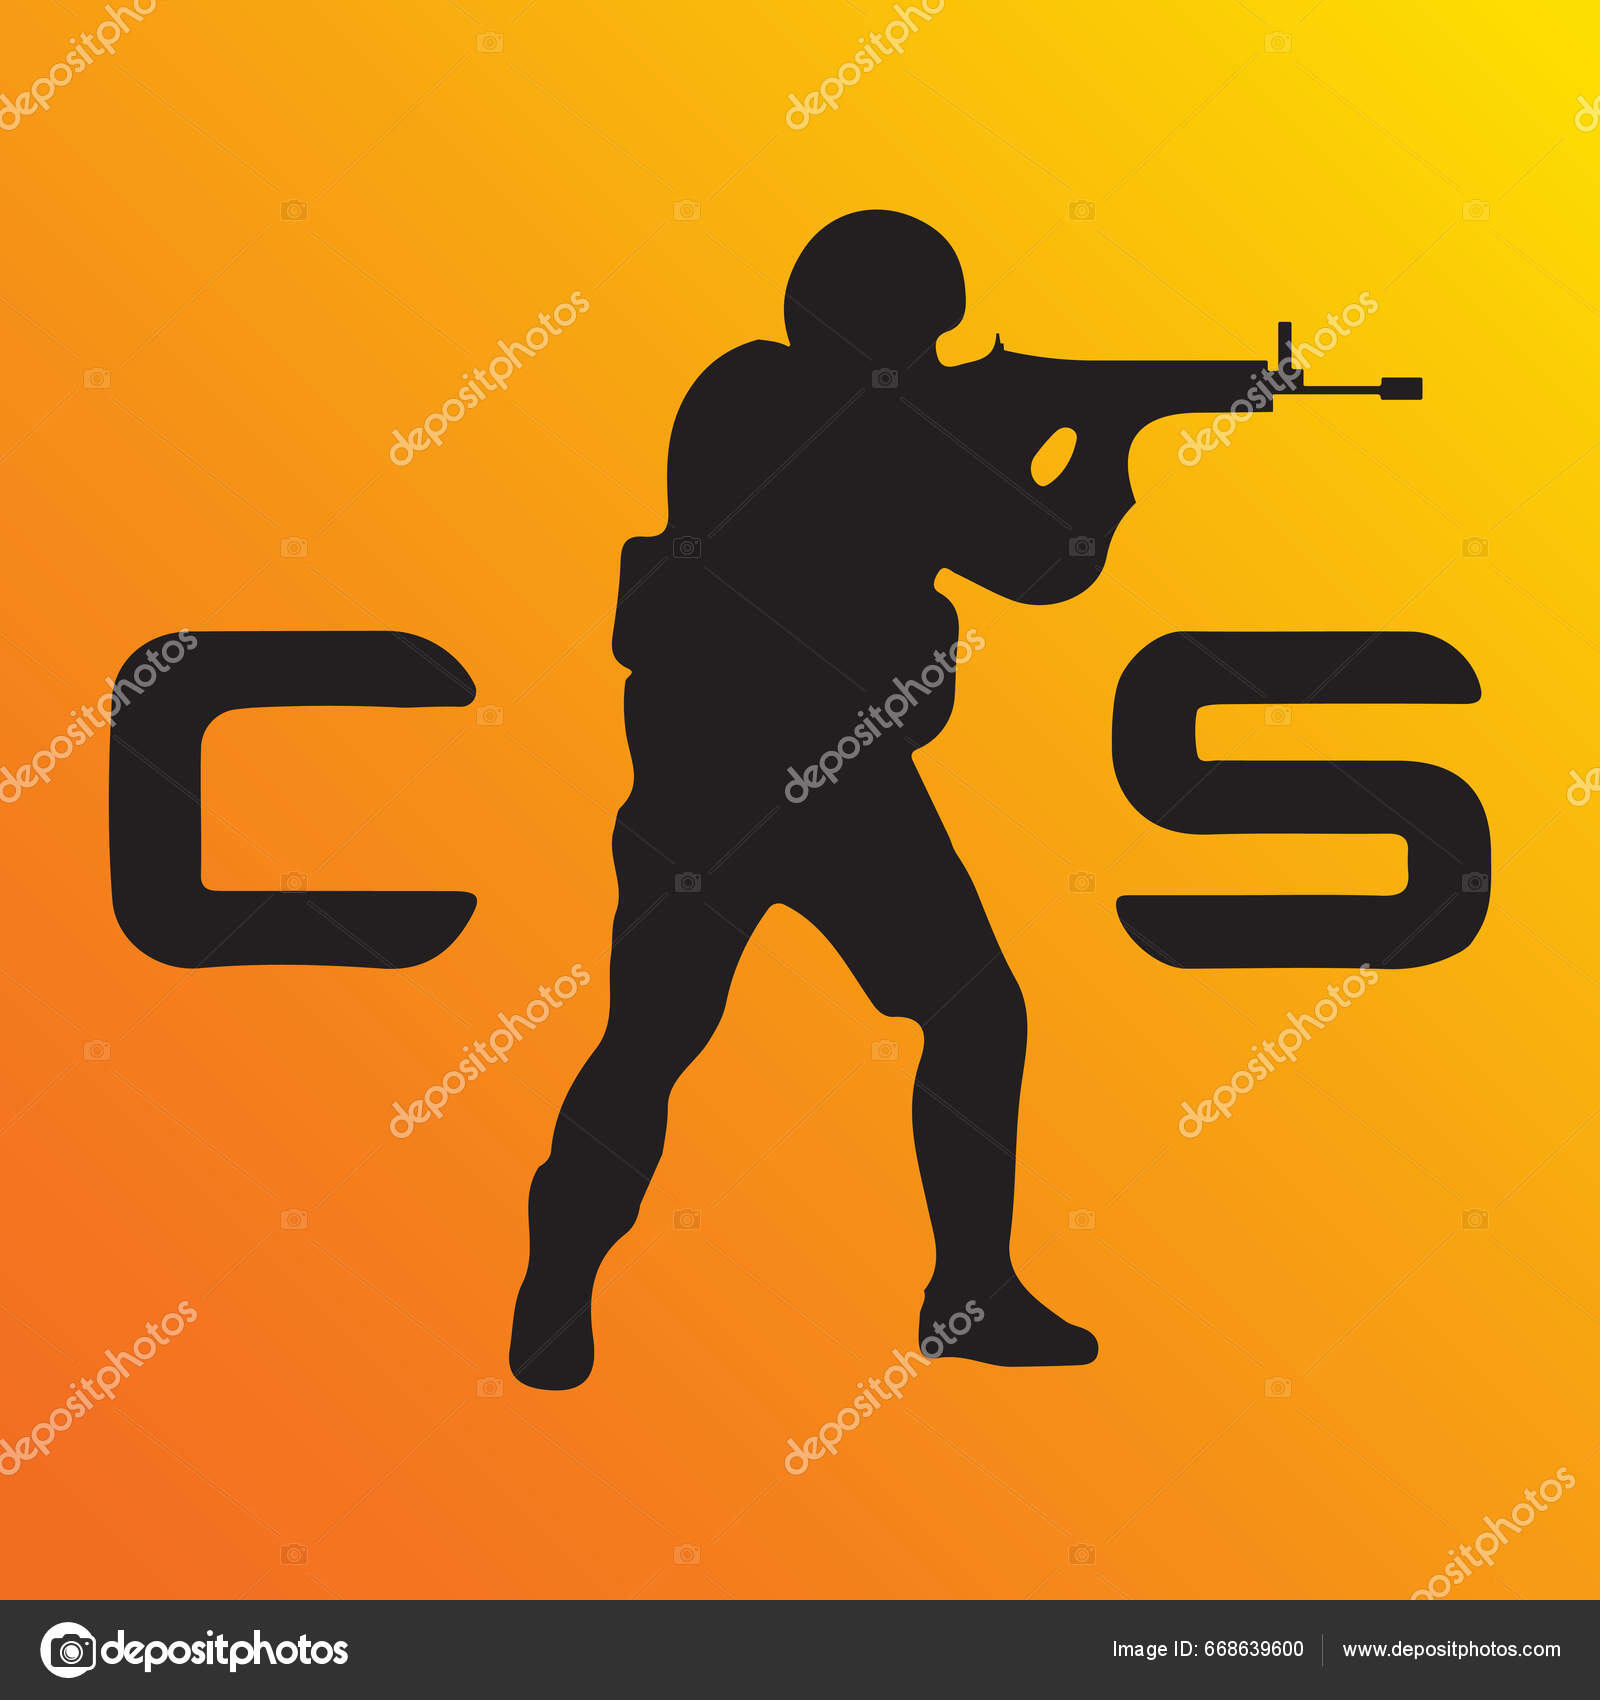 Counter-Strike 2 (CS2): quais os requisitos para jogar?